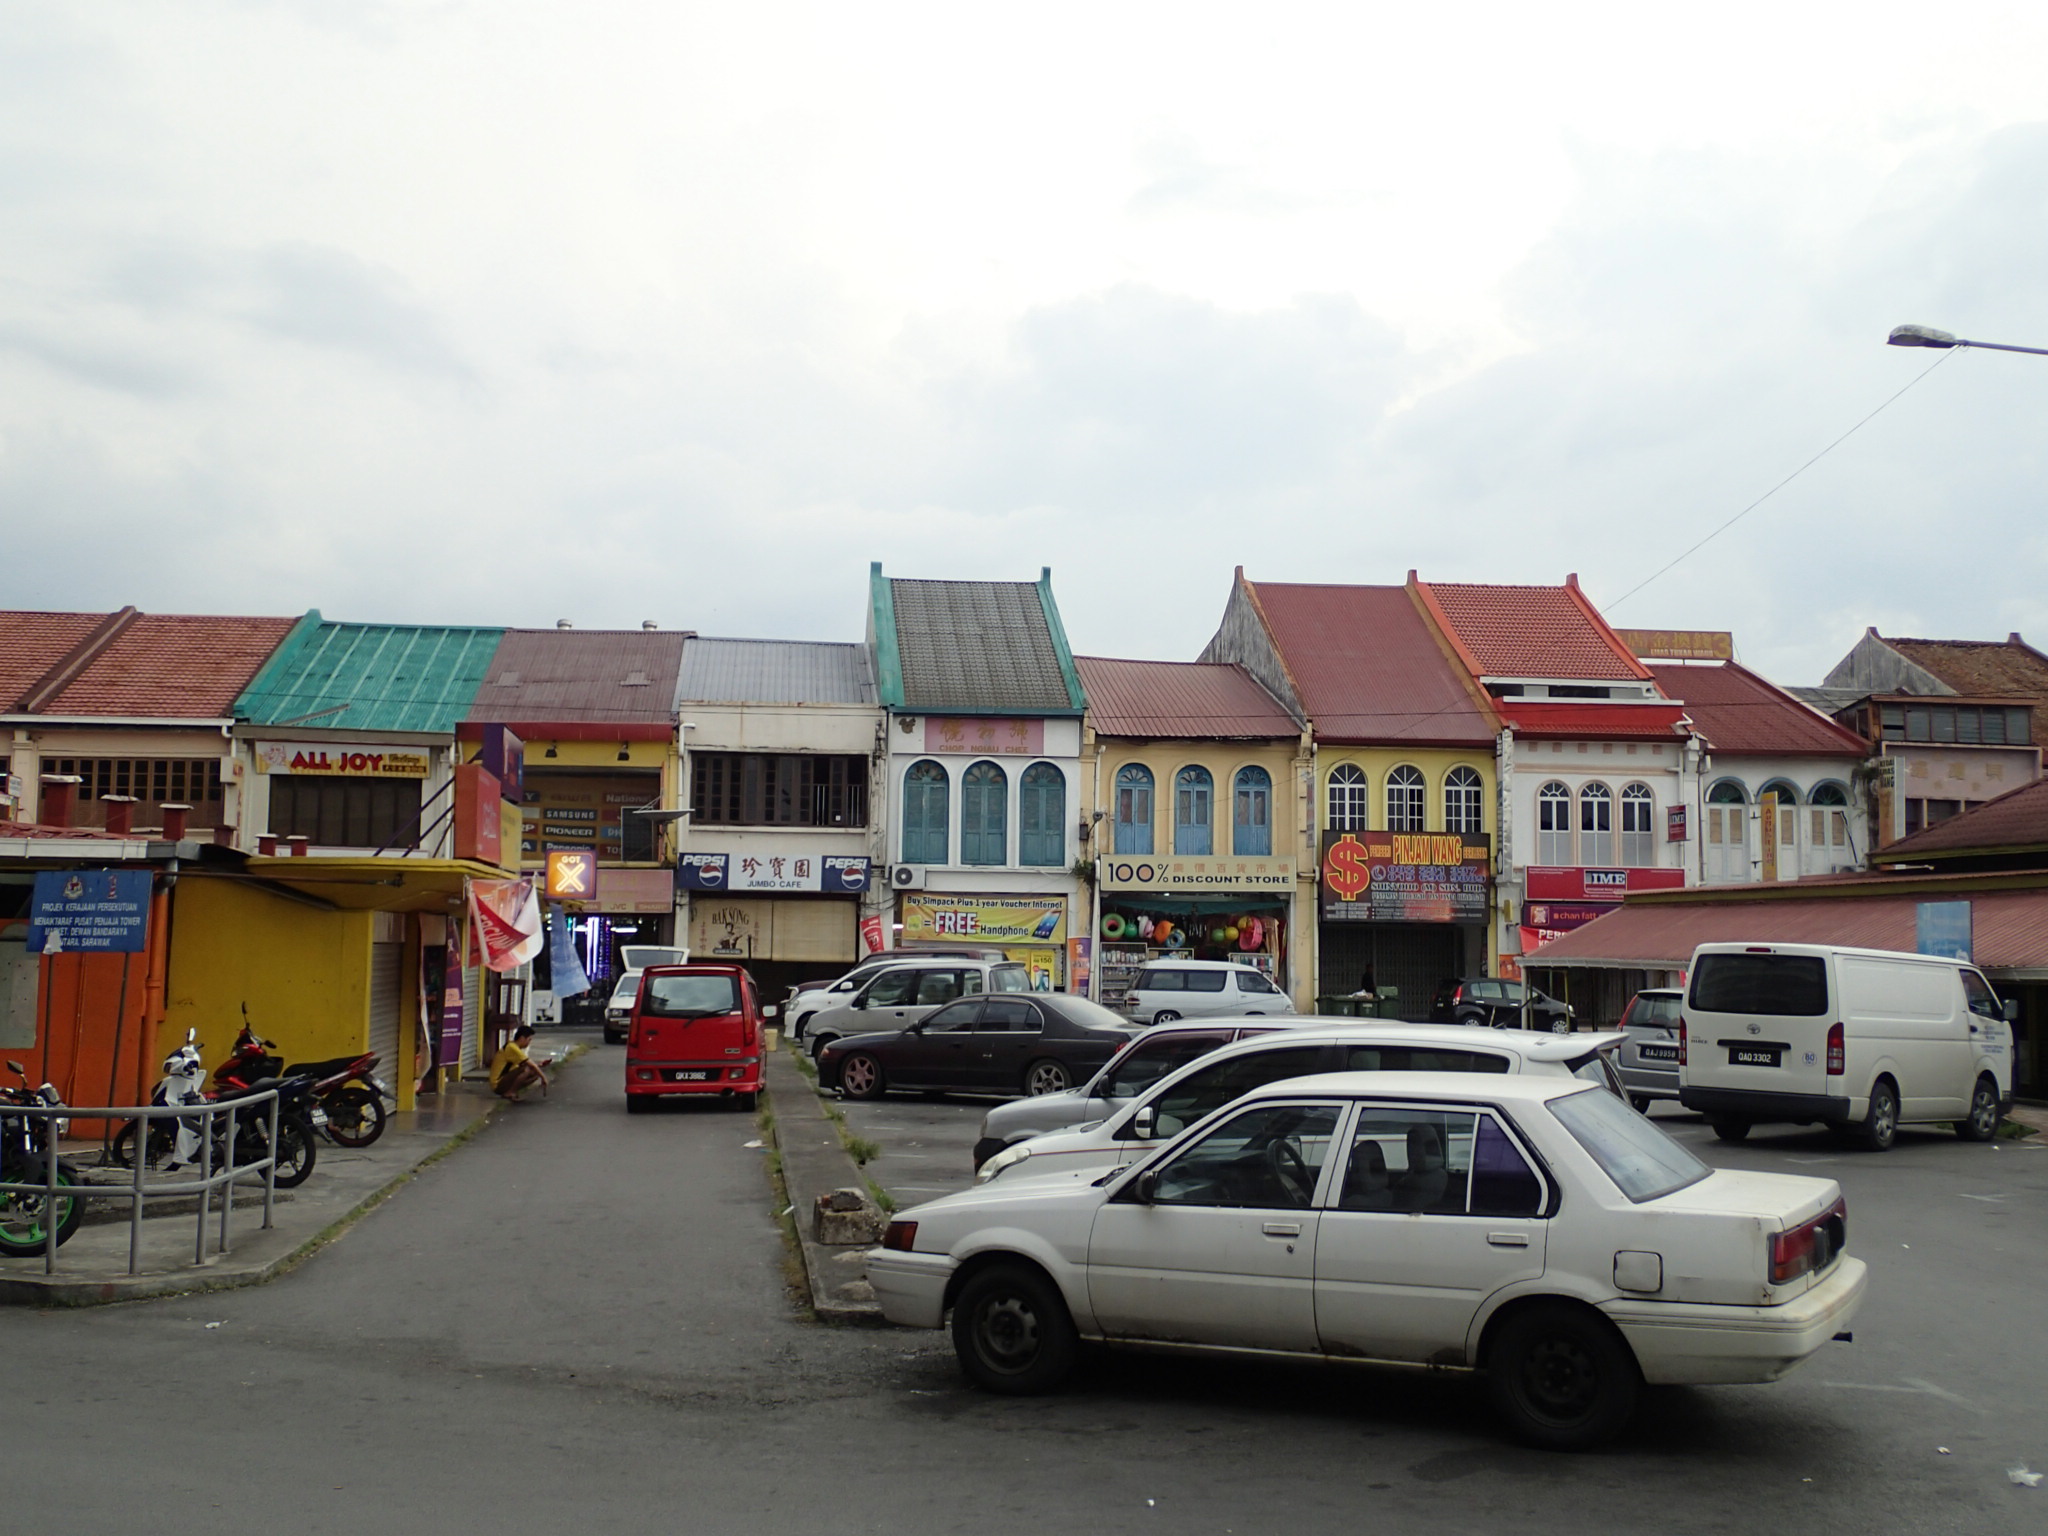 Main Bazaar Kuching 1